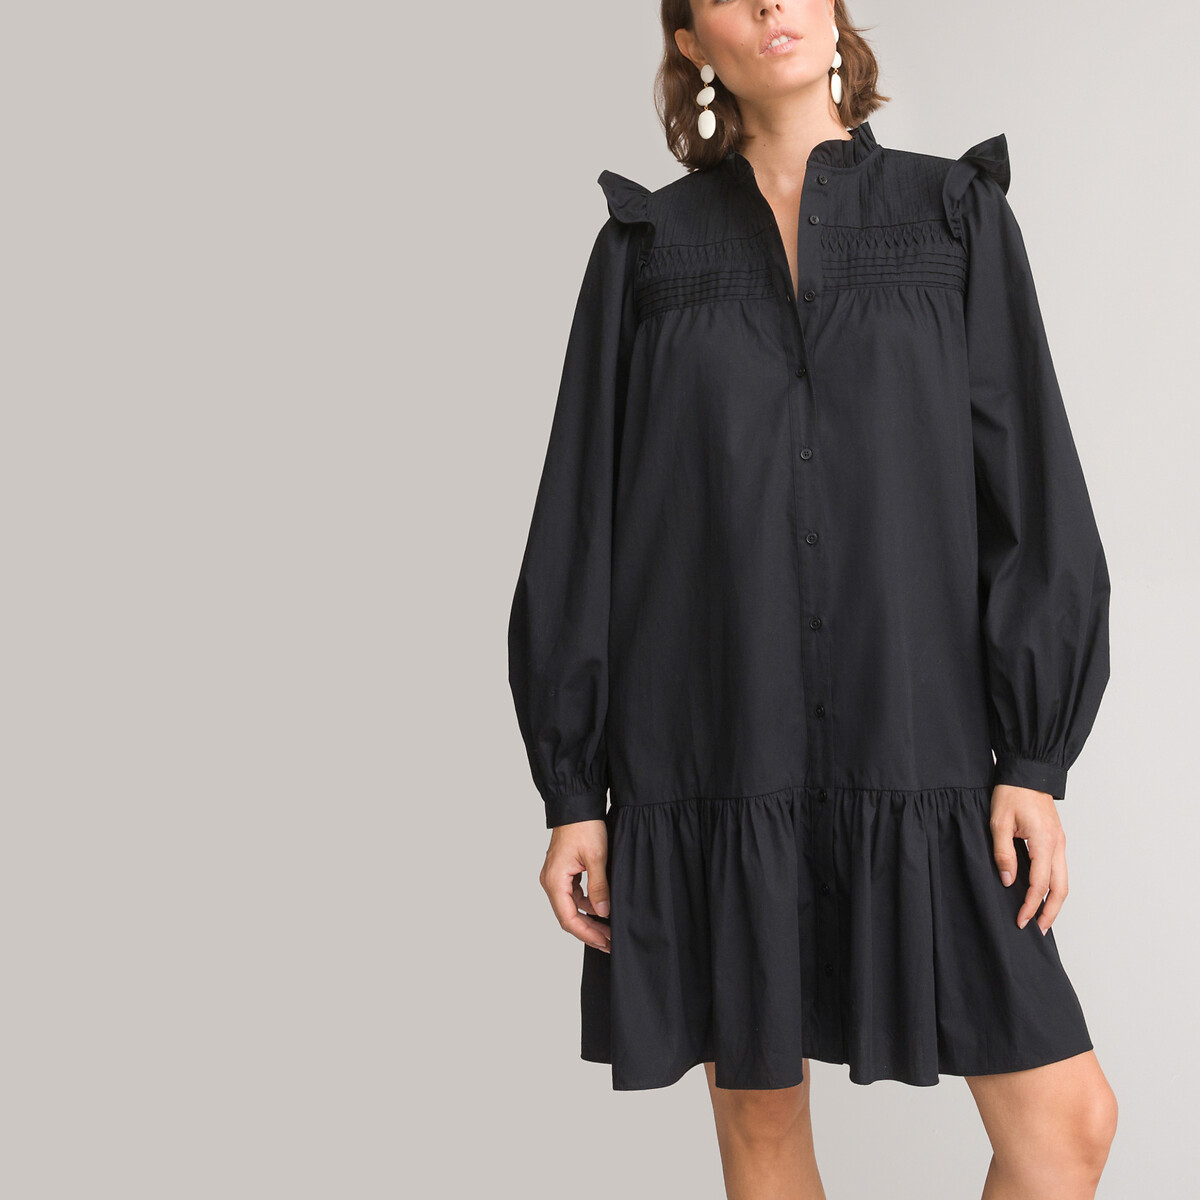 Платье короткое расклешенное длинные рукава 44 черный платье пуловер короткое в полоску длинные рукава s черный